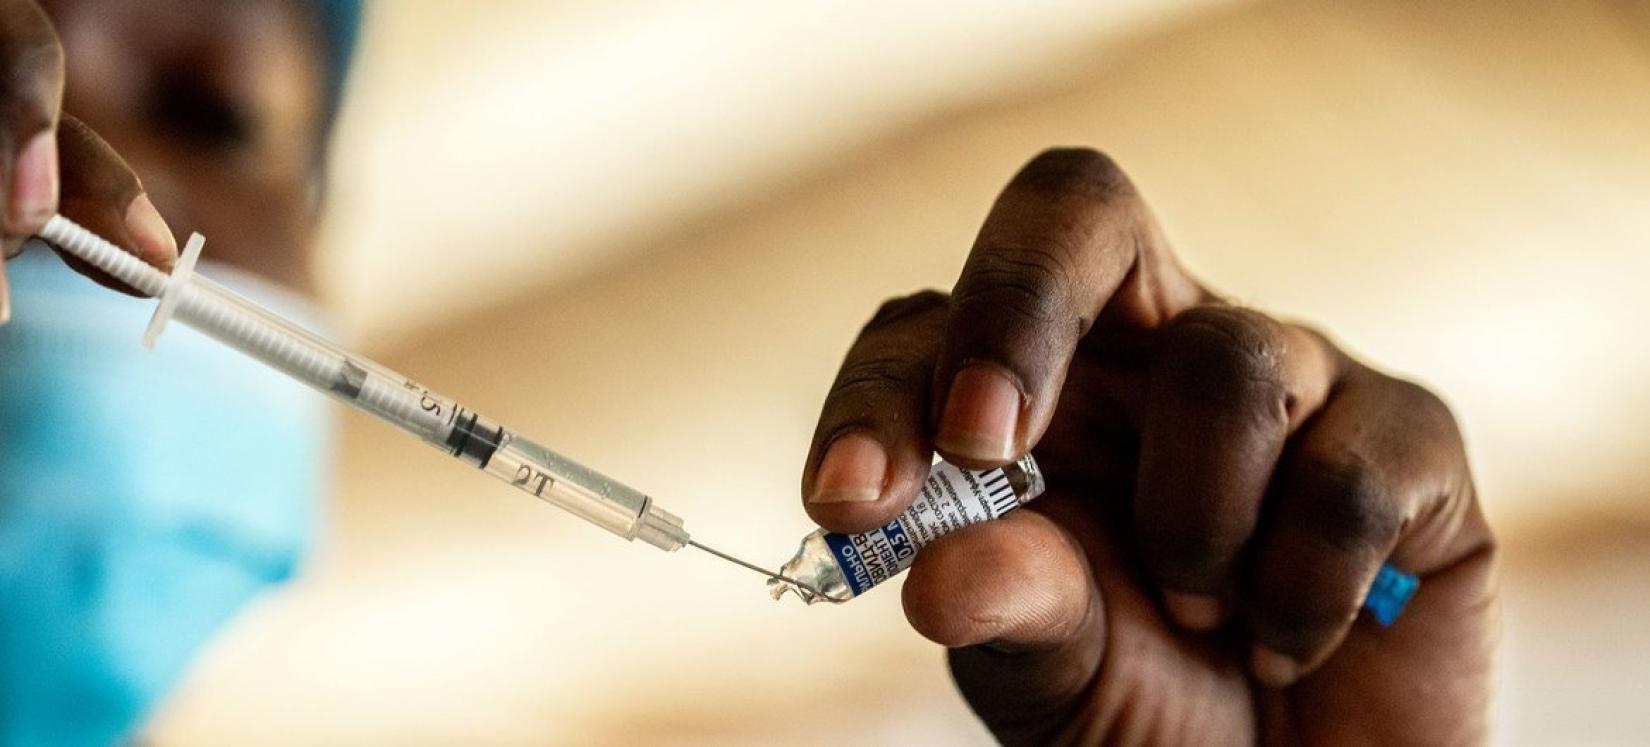 Profissional de saúde prepara aplicação de vacina contra a COVID-19 em Luanda, Angola.